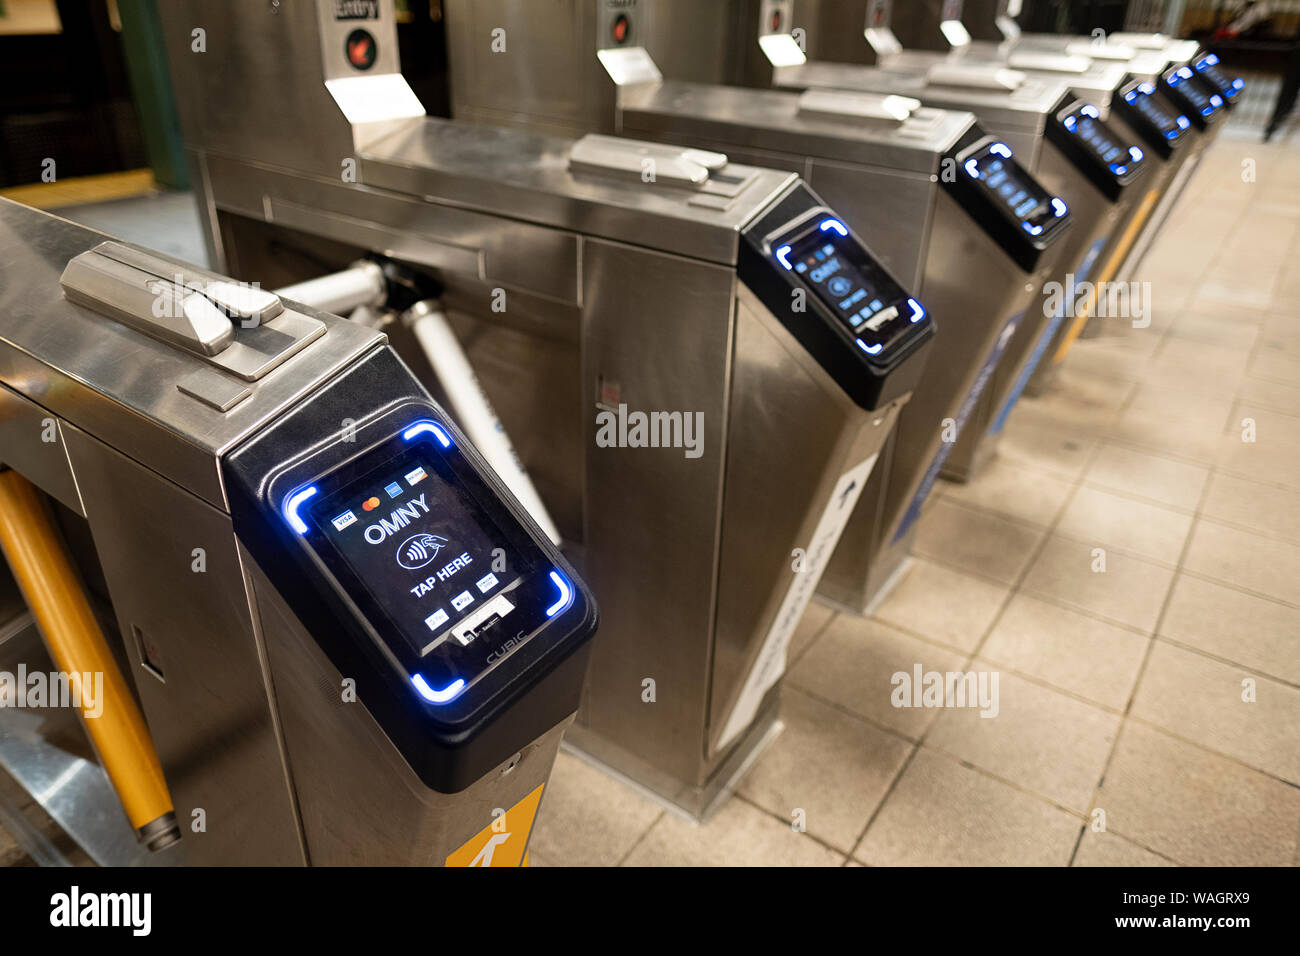 Nouvelle technologie OMNY pour paiement du tarif de transport public de New York. À East 33rd Street station sur la ligne 6 à Manhattan. Banque D'Images